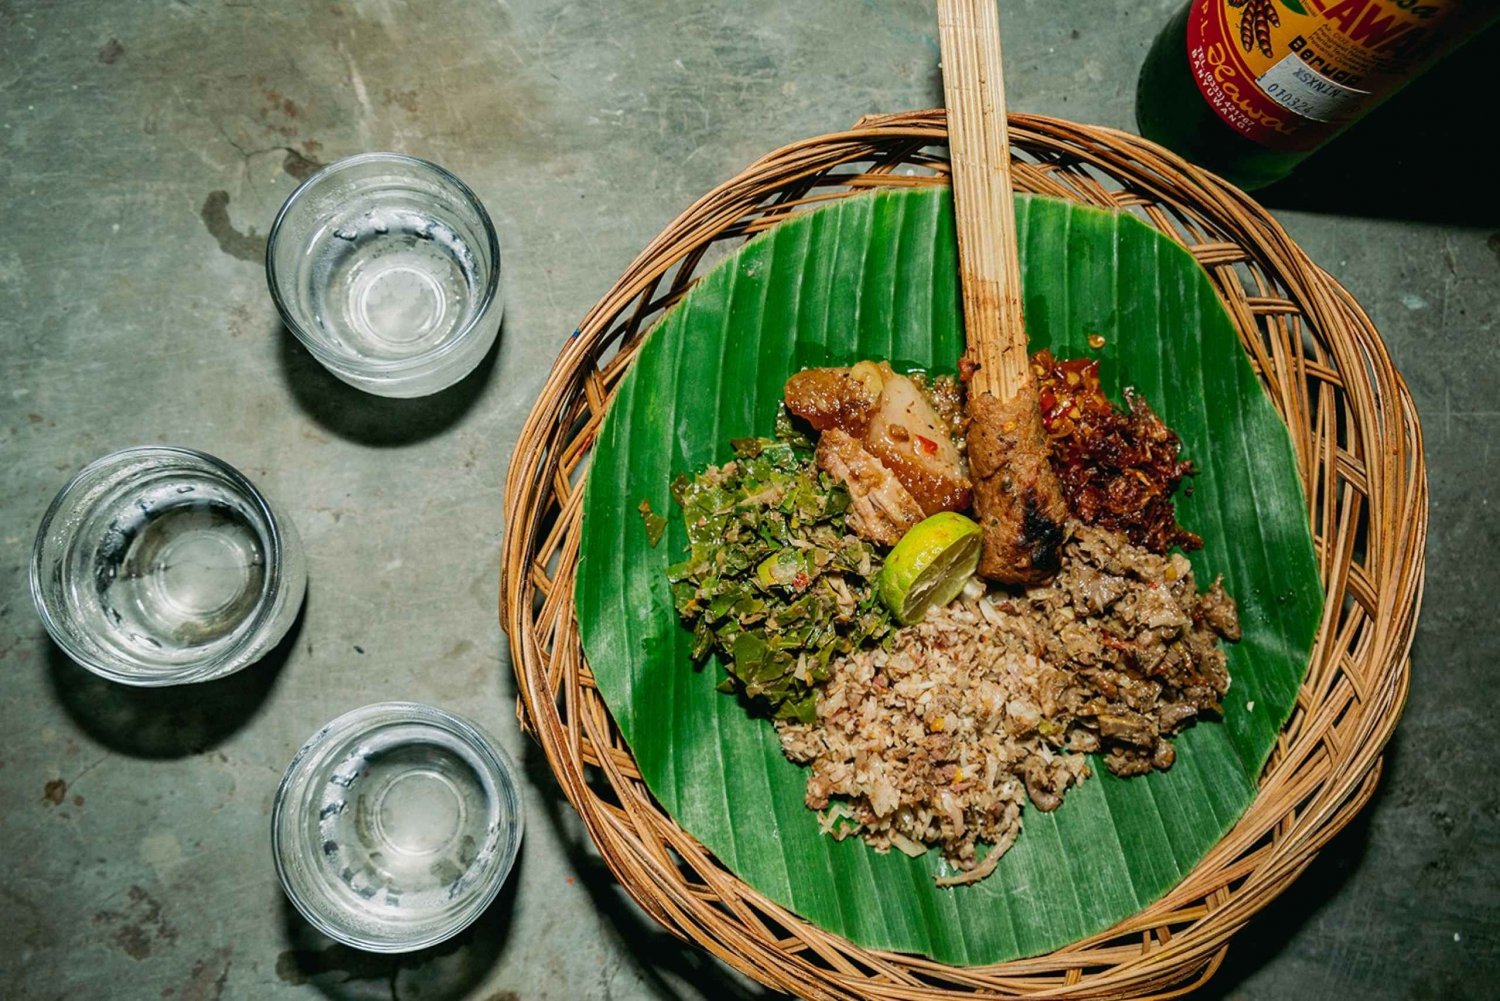 Bali Bites Food Tour med 15+ smagsprøver